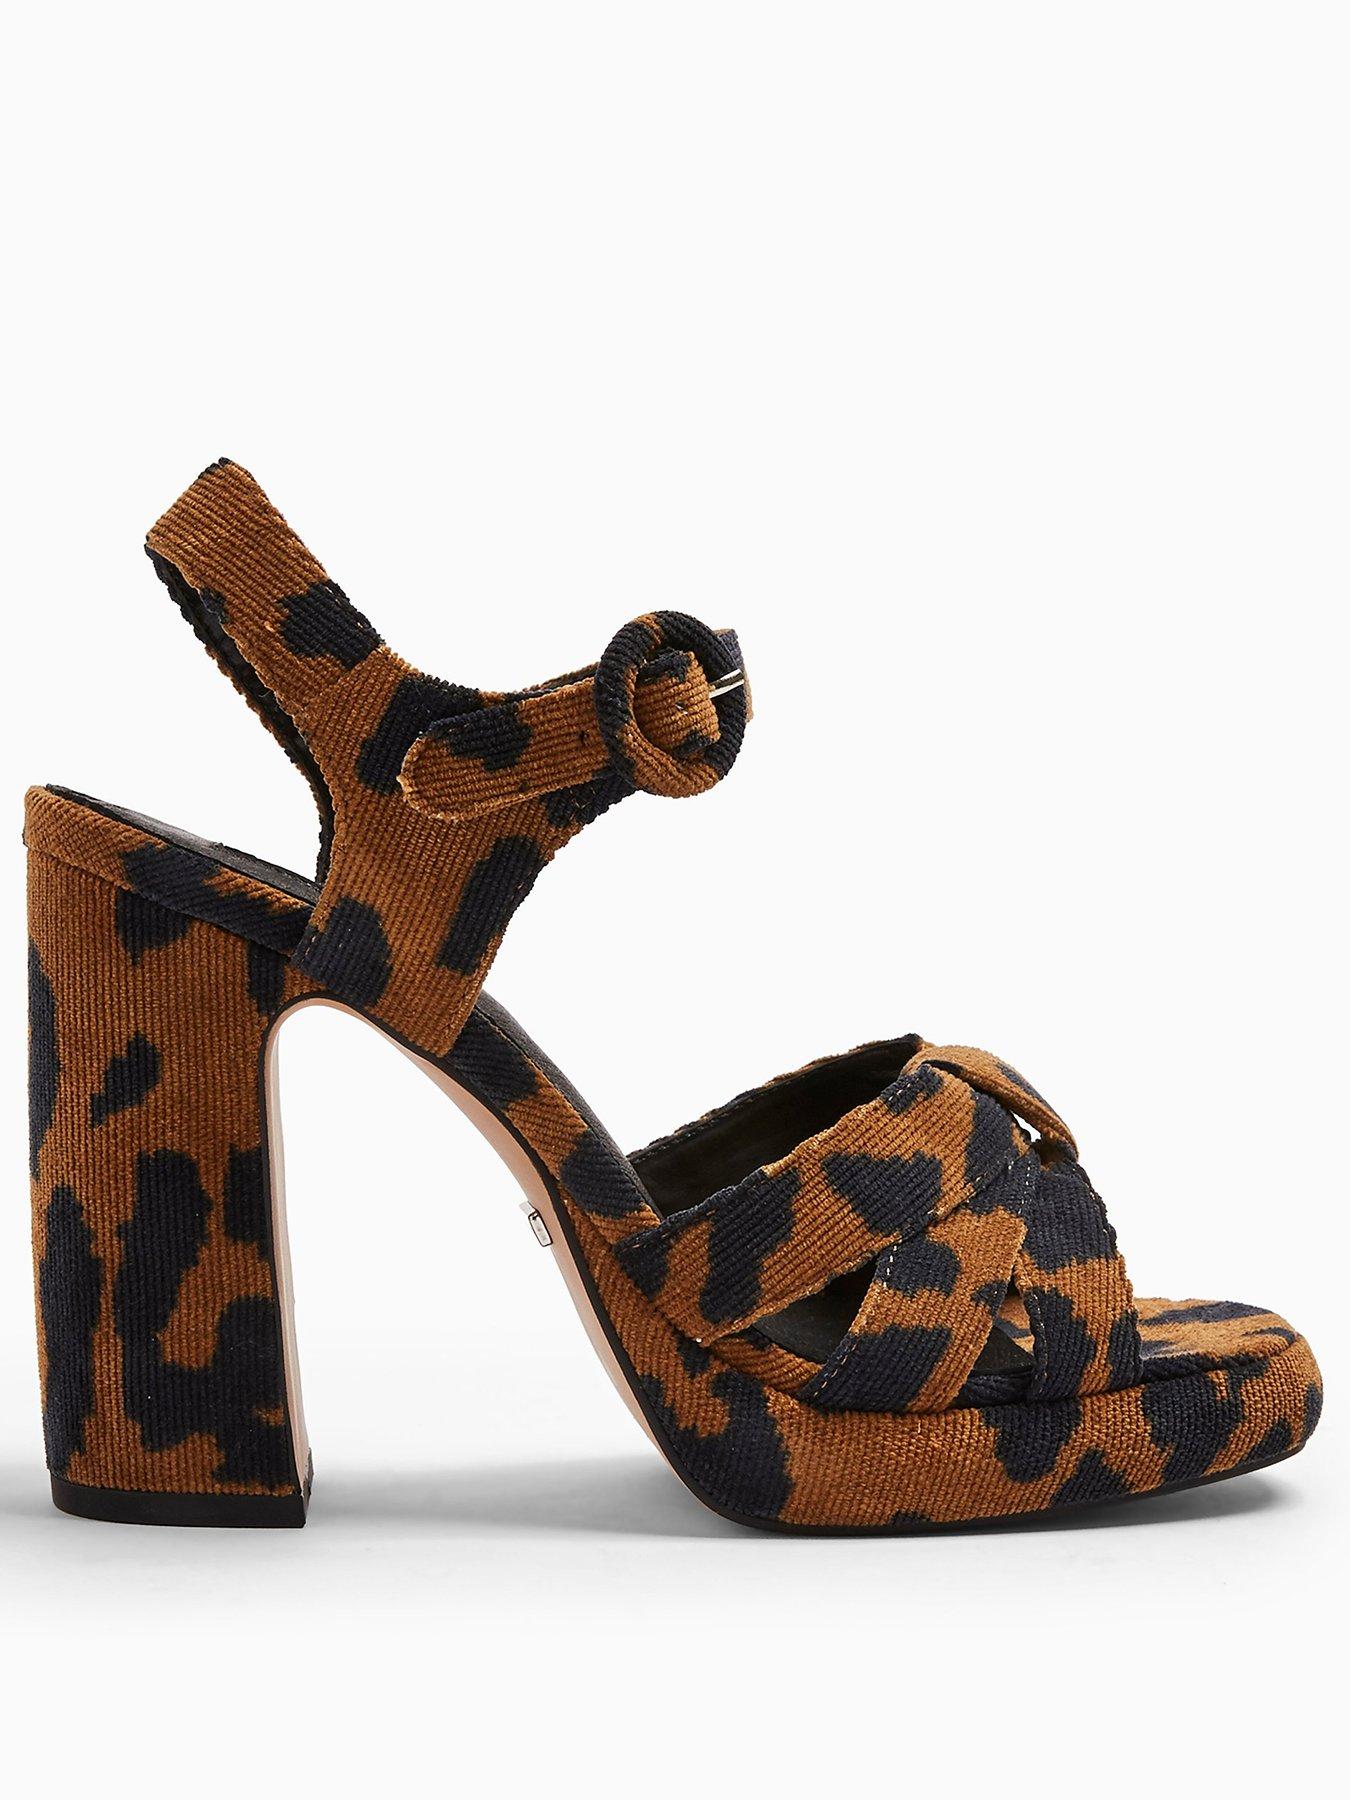 topshop leopard print sandals